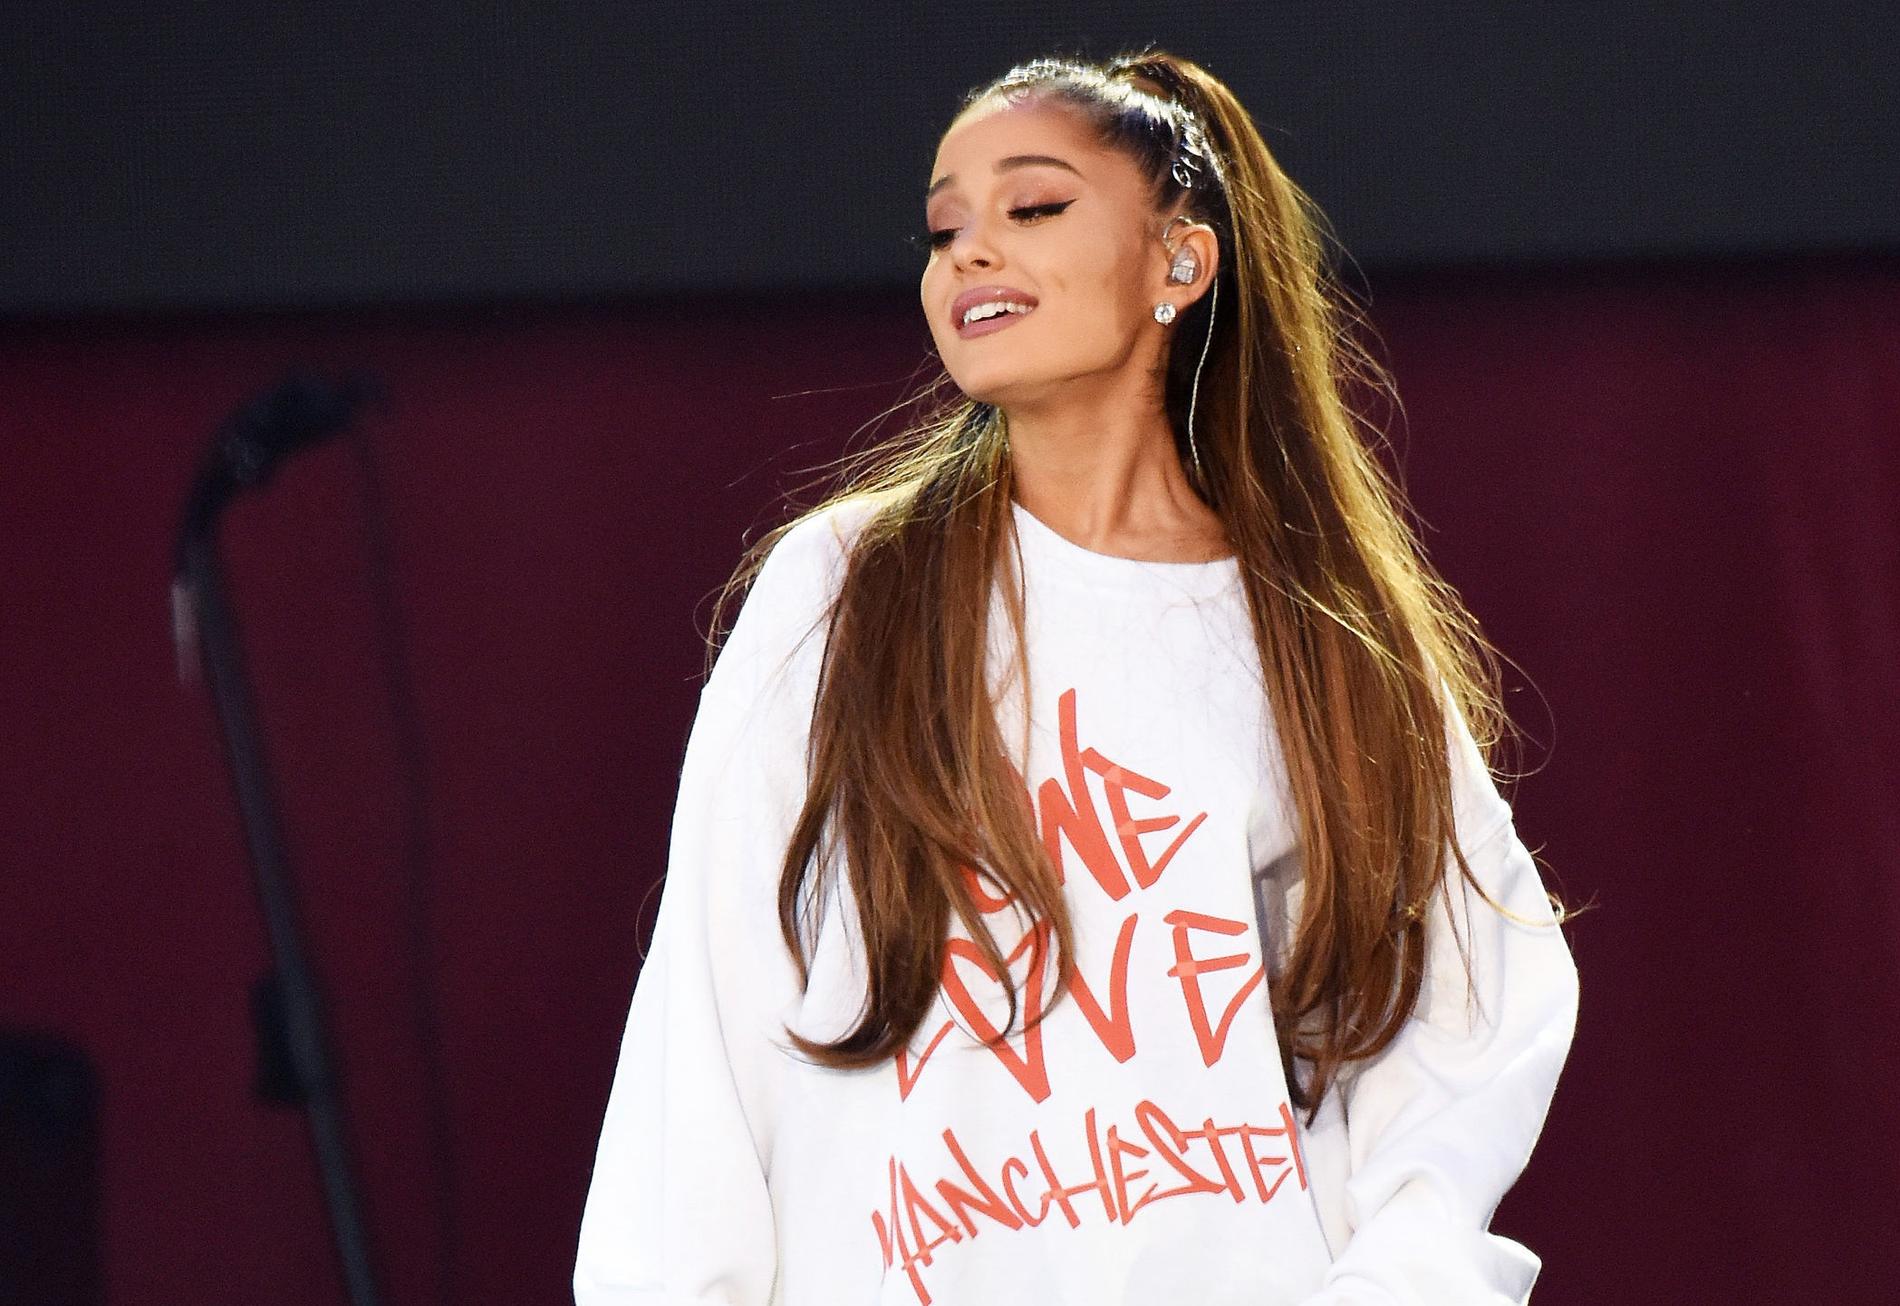 Ariana Grandes konsert ”One love Manchester” har dragit in över 110 miljoner kronor.